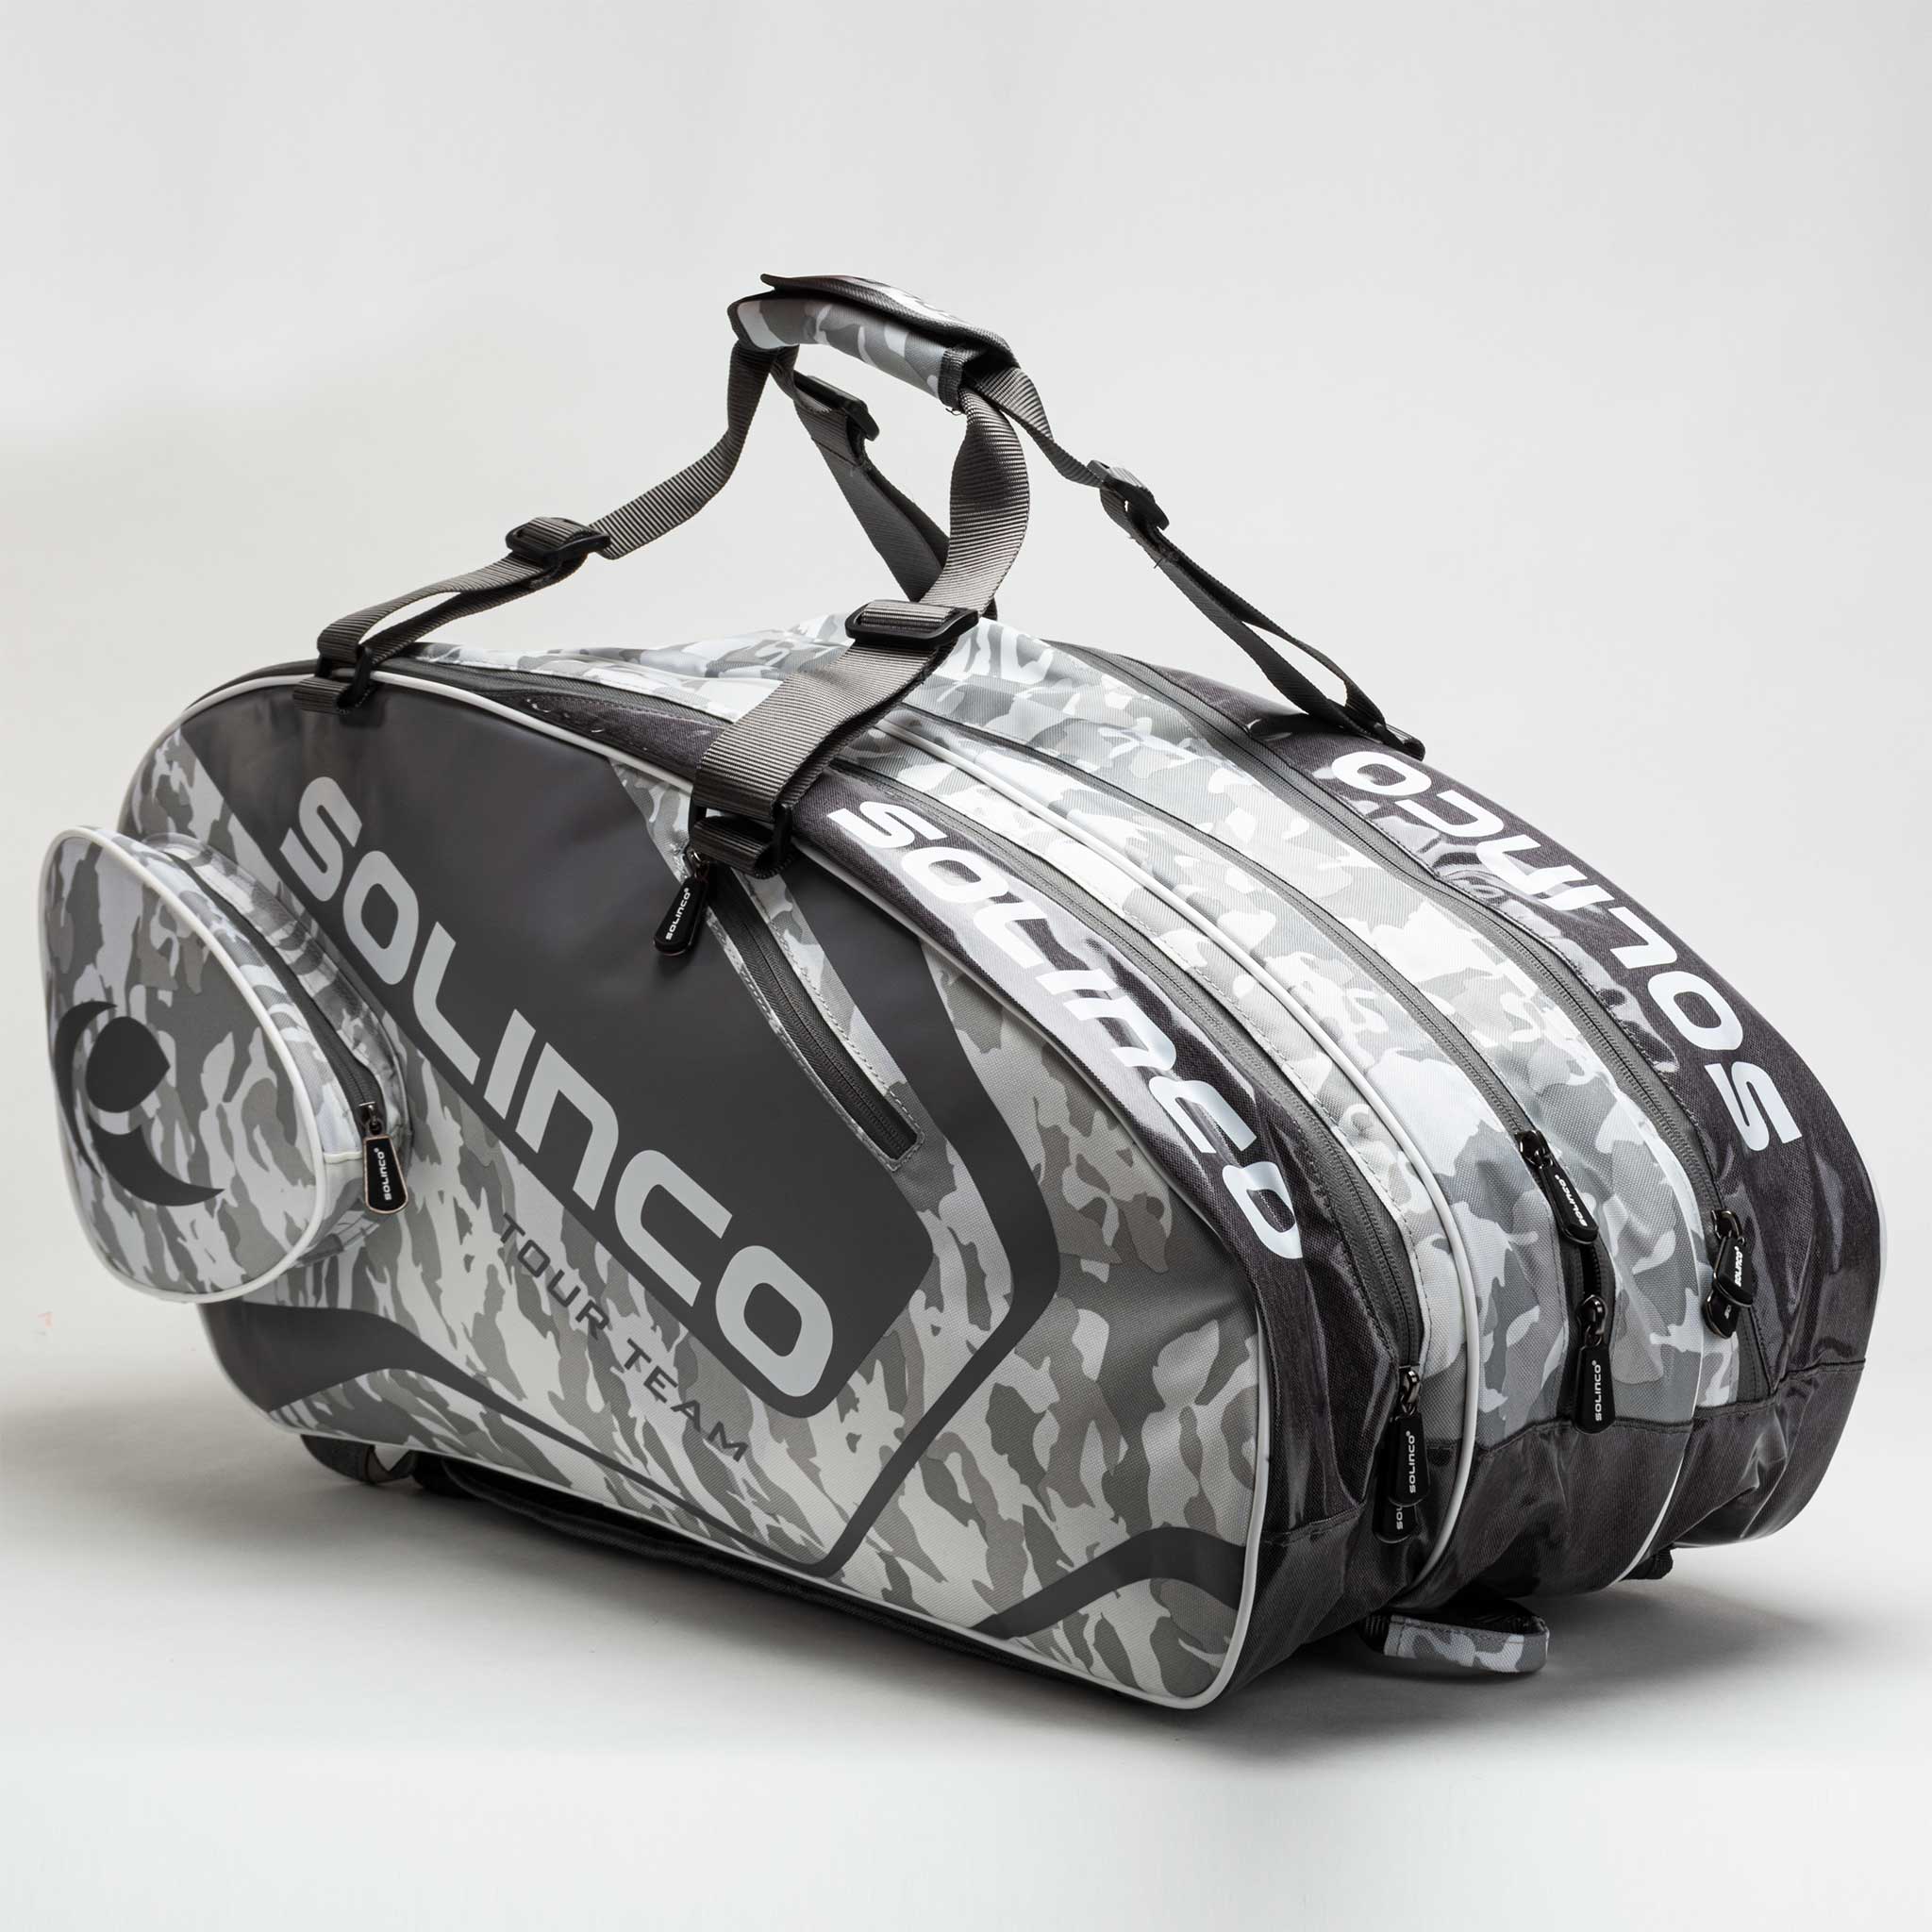 Solinco Tour 15 Pack Bag White Camo